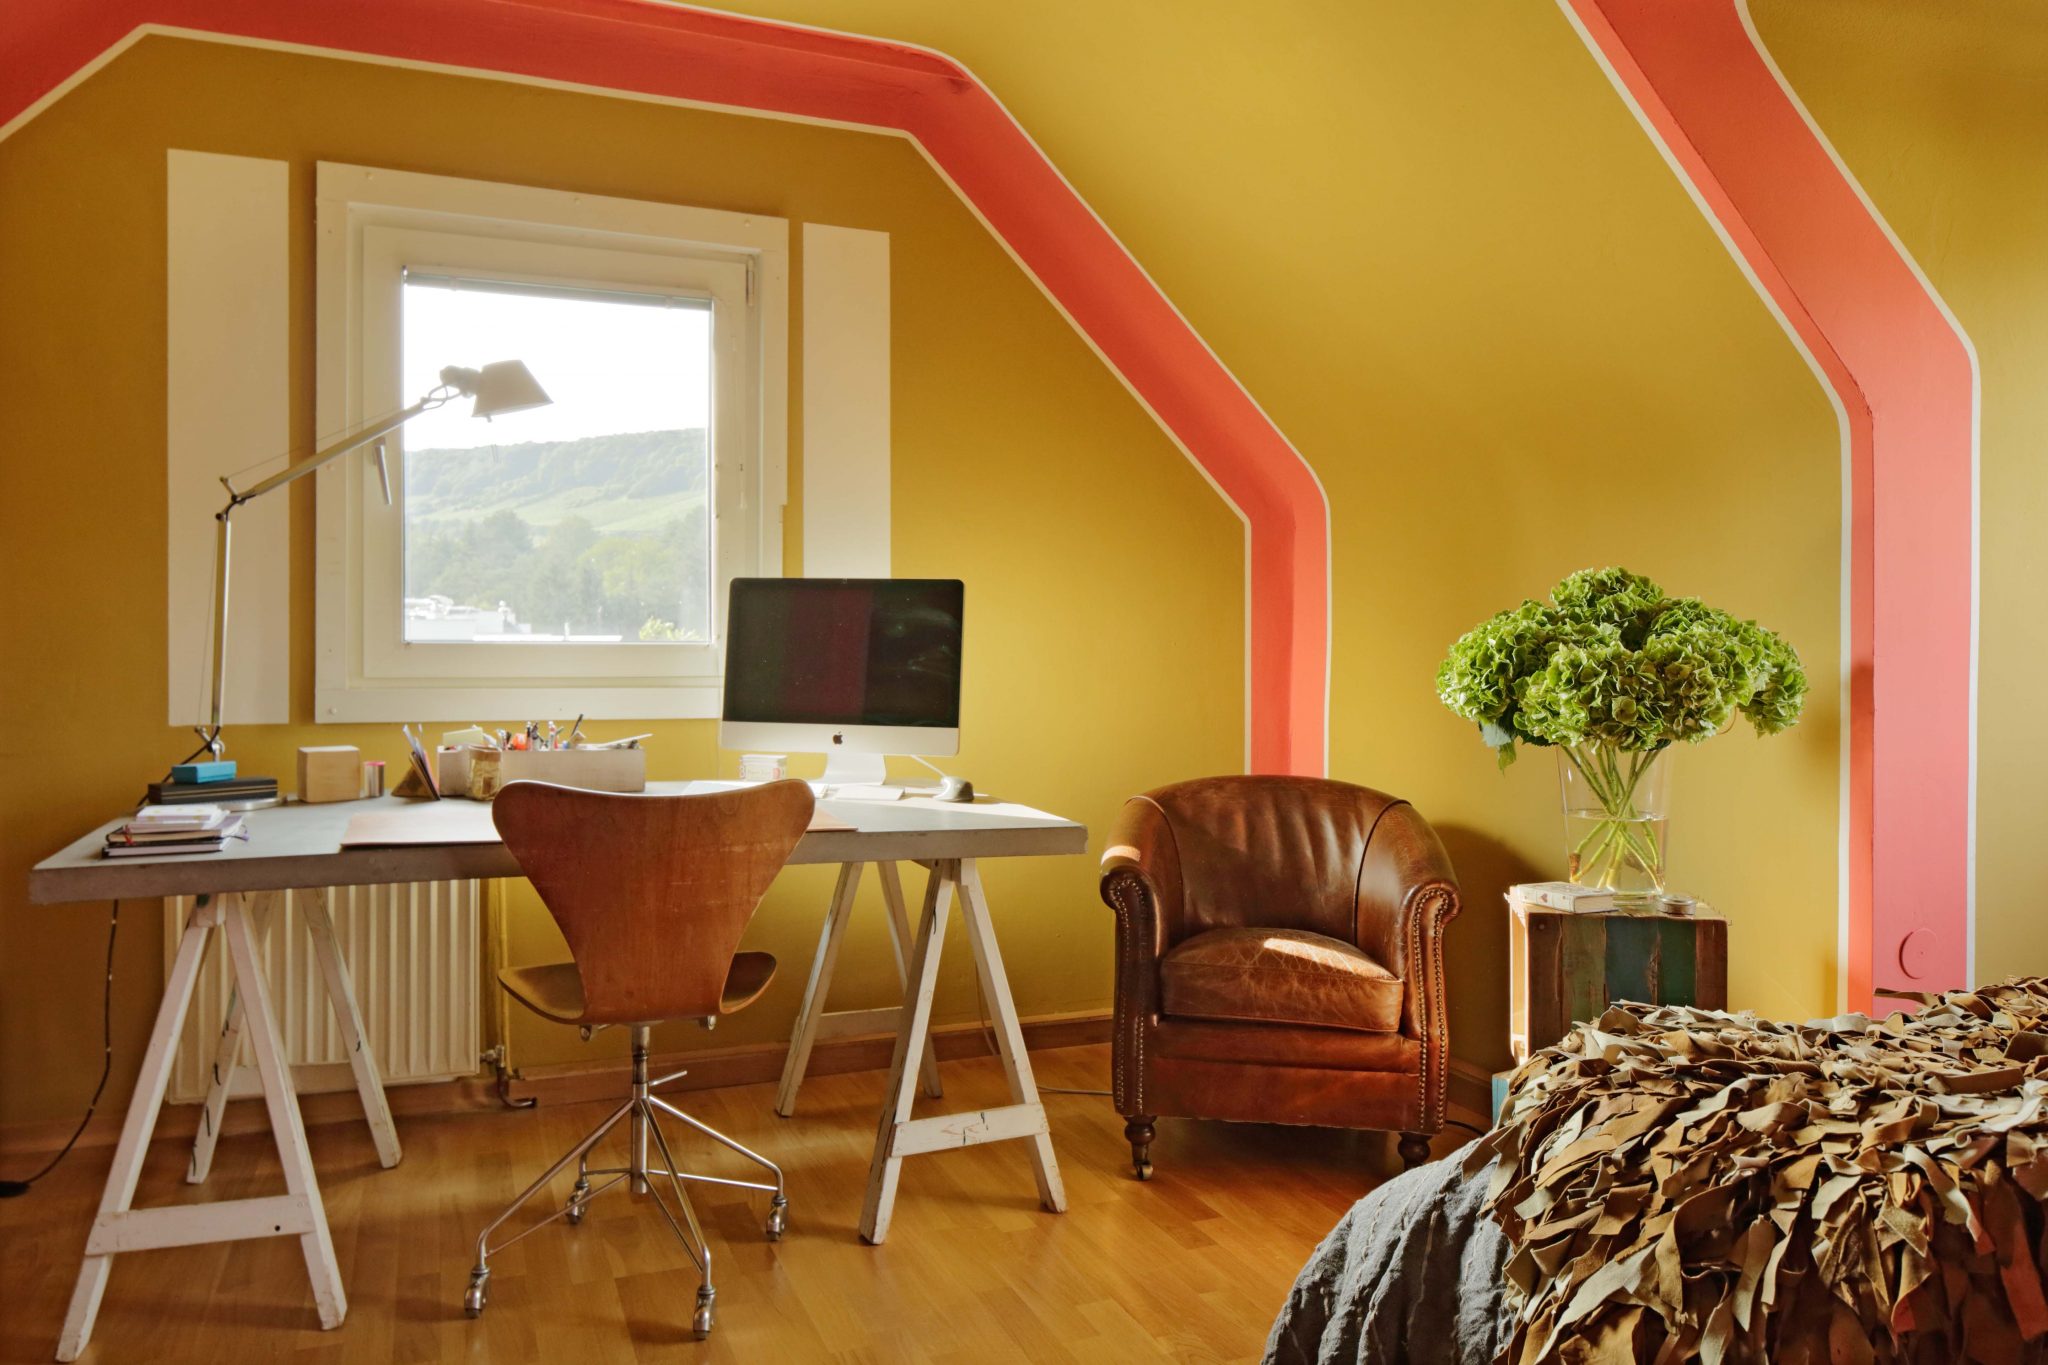 Durch Farbgestaltung in Bananengelb und Orange hervorgehobe Dachschrägen mit schlicht-elegantem Interior.